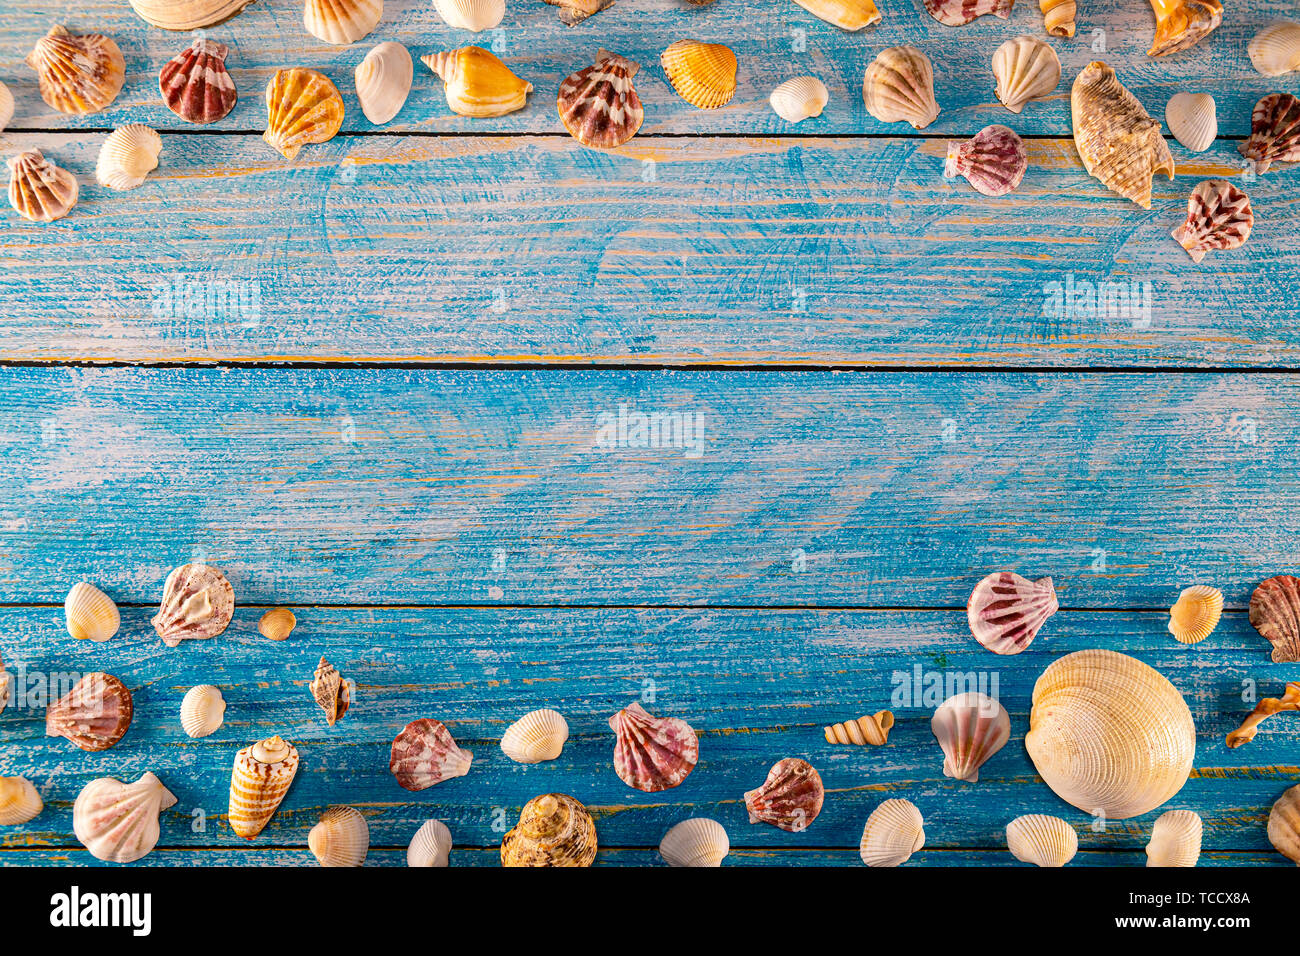 Sommer Konzept mit Muscheln auf einem blauen Hintergrund aus Holz. Seashells Rahmen auf Holz- Hintergrund nautischen Grenze. Fokus auf Muscheln. Stockfoto